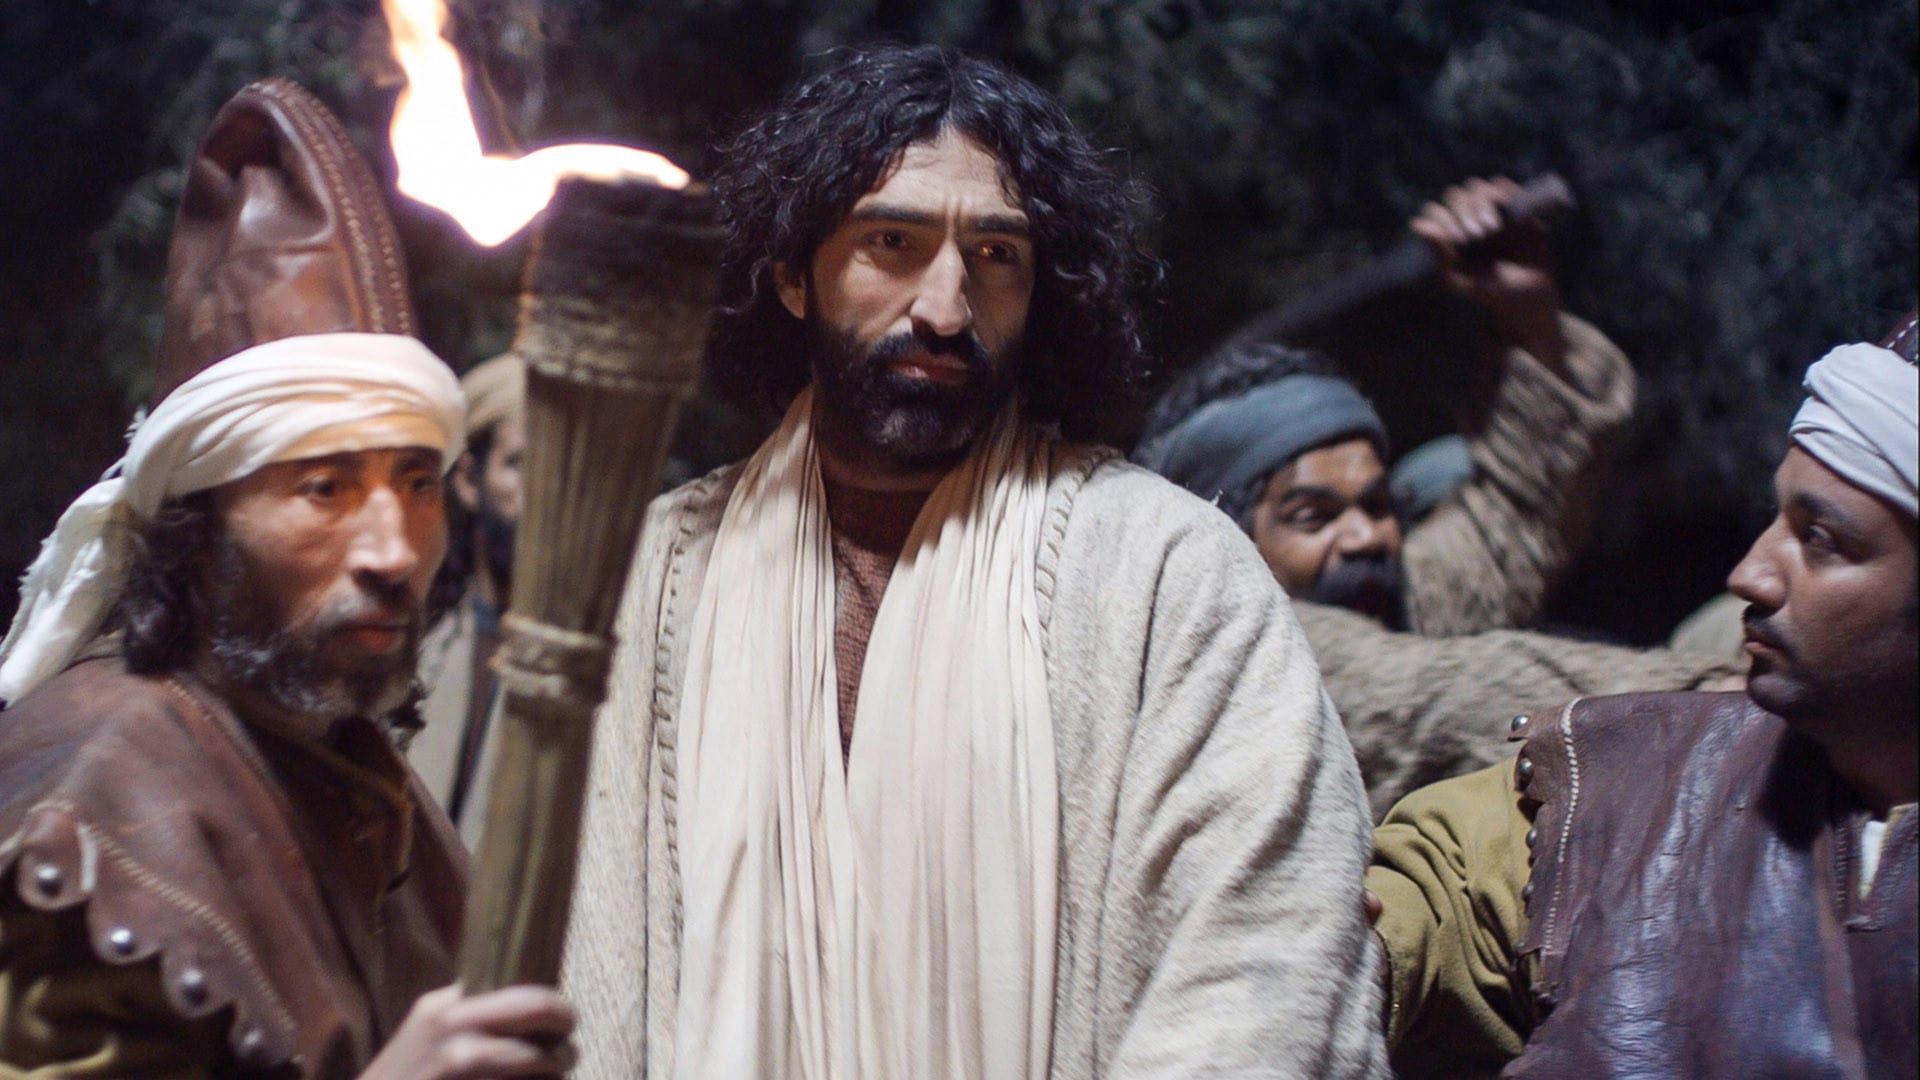 Jesus arrested in Gethsemane